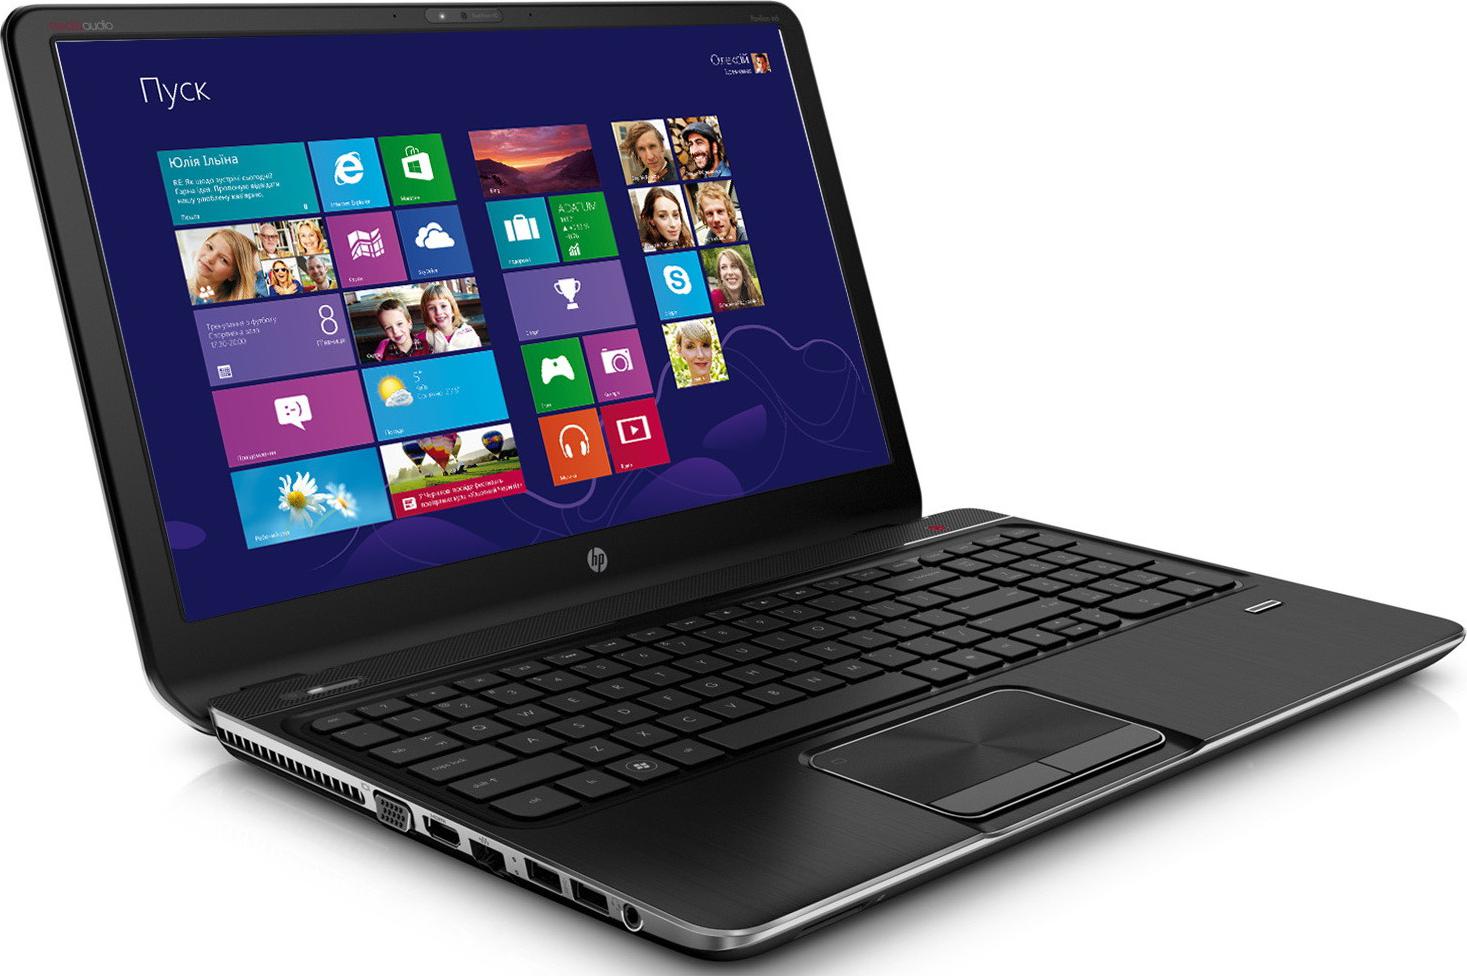 Ноутбук HP Envy m6-1153er